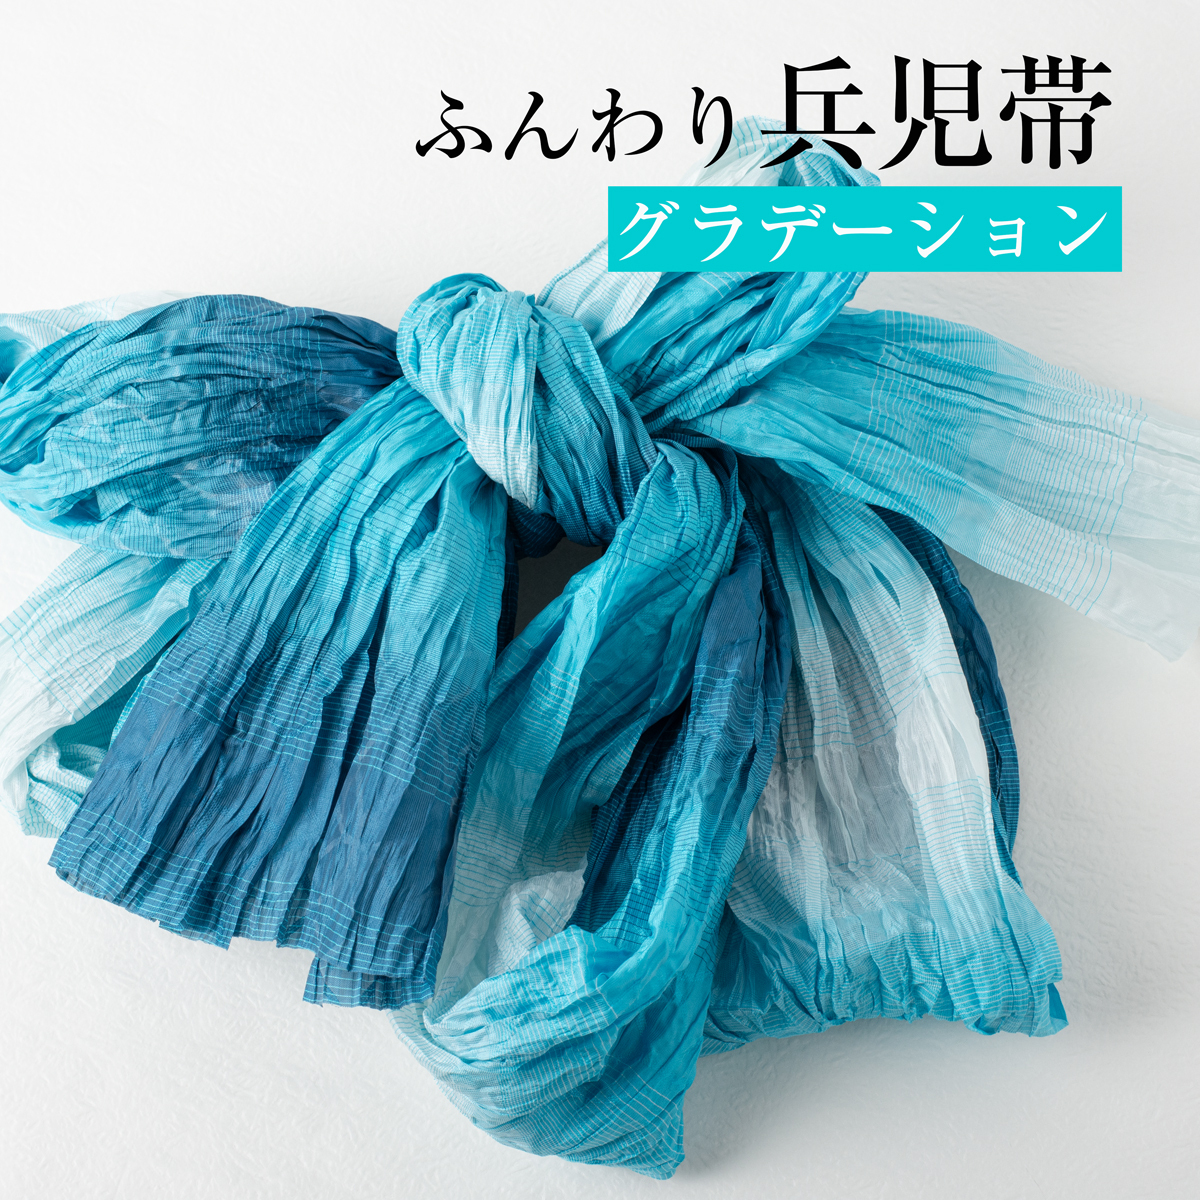  пояс хекооби взрослый [ градация aqua ] мягкий пояс хекооби помятость модель dore-p обработка юката obi сделано в Японии 